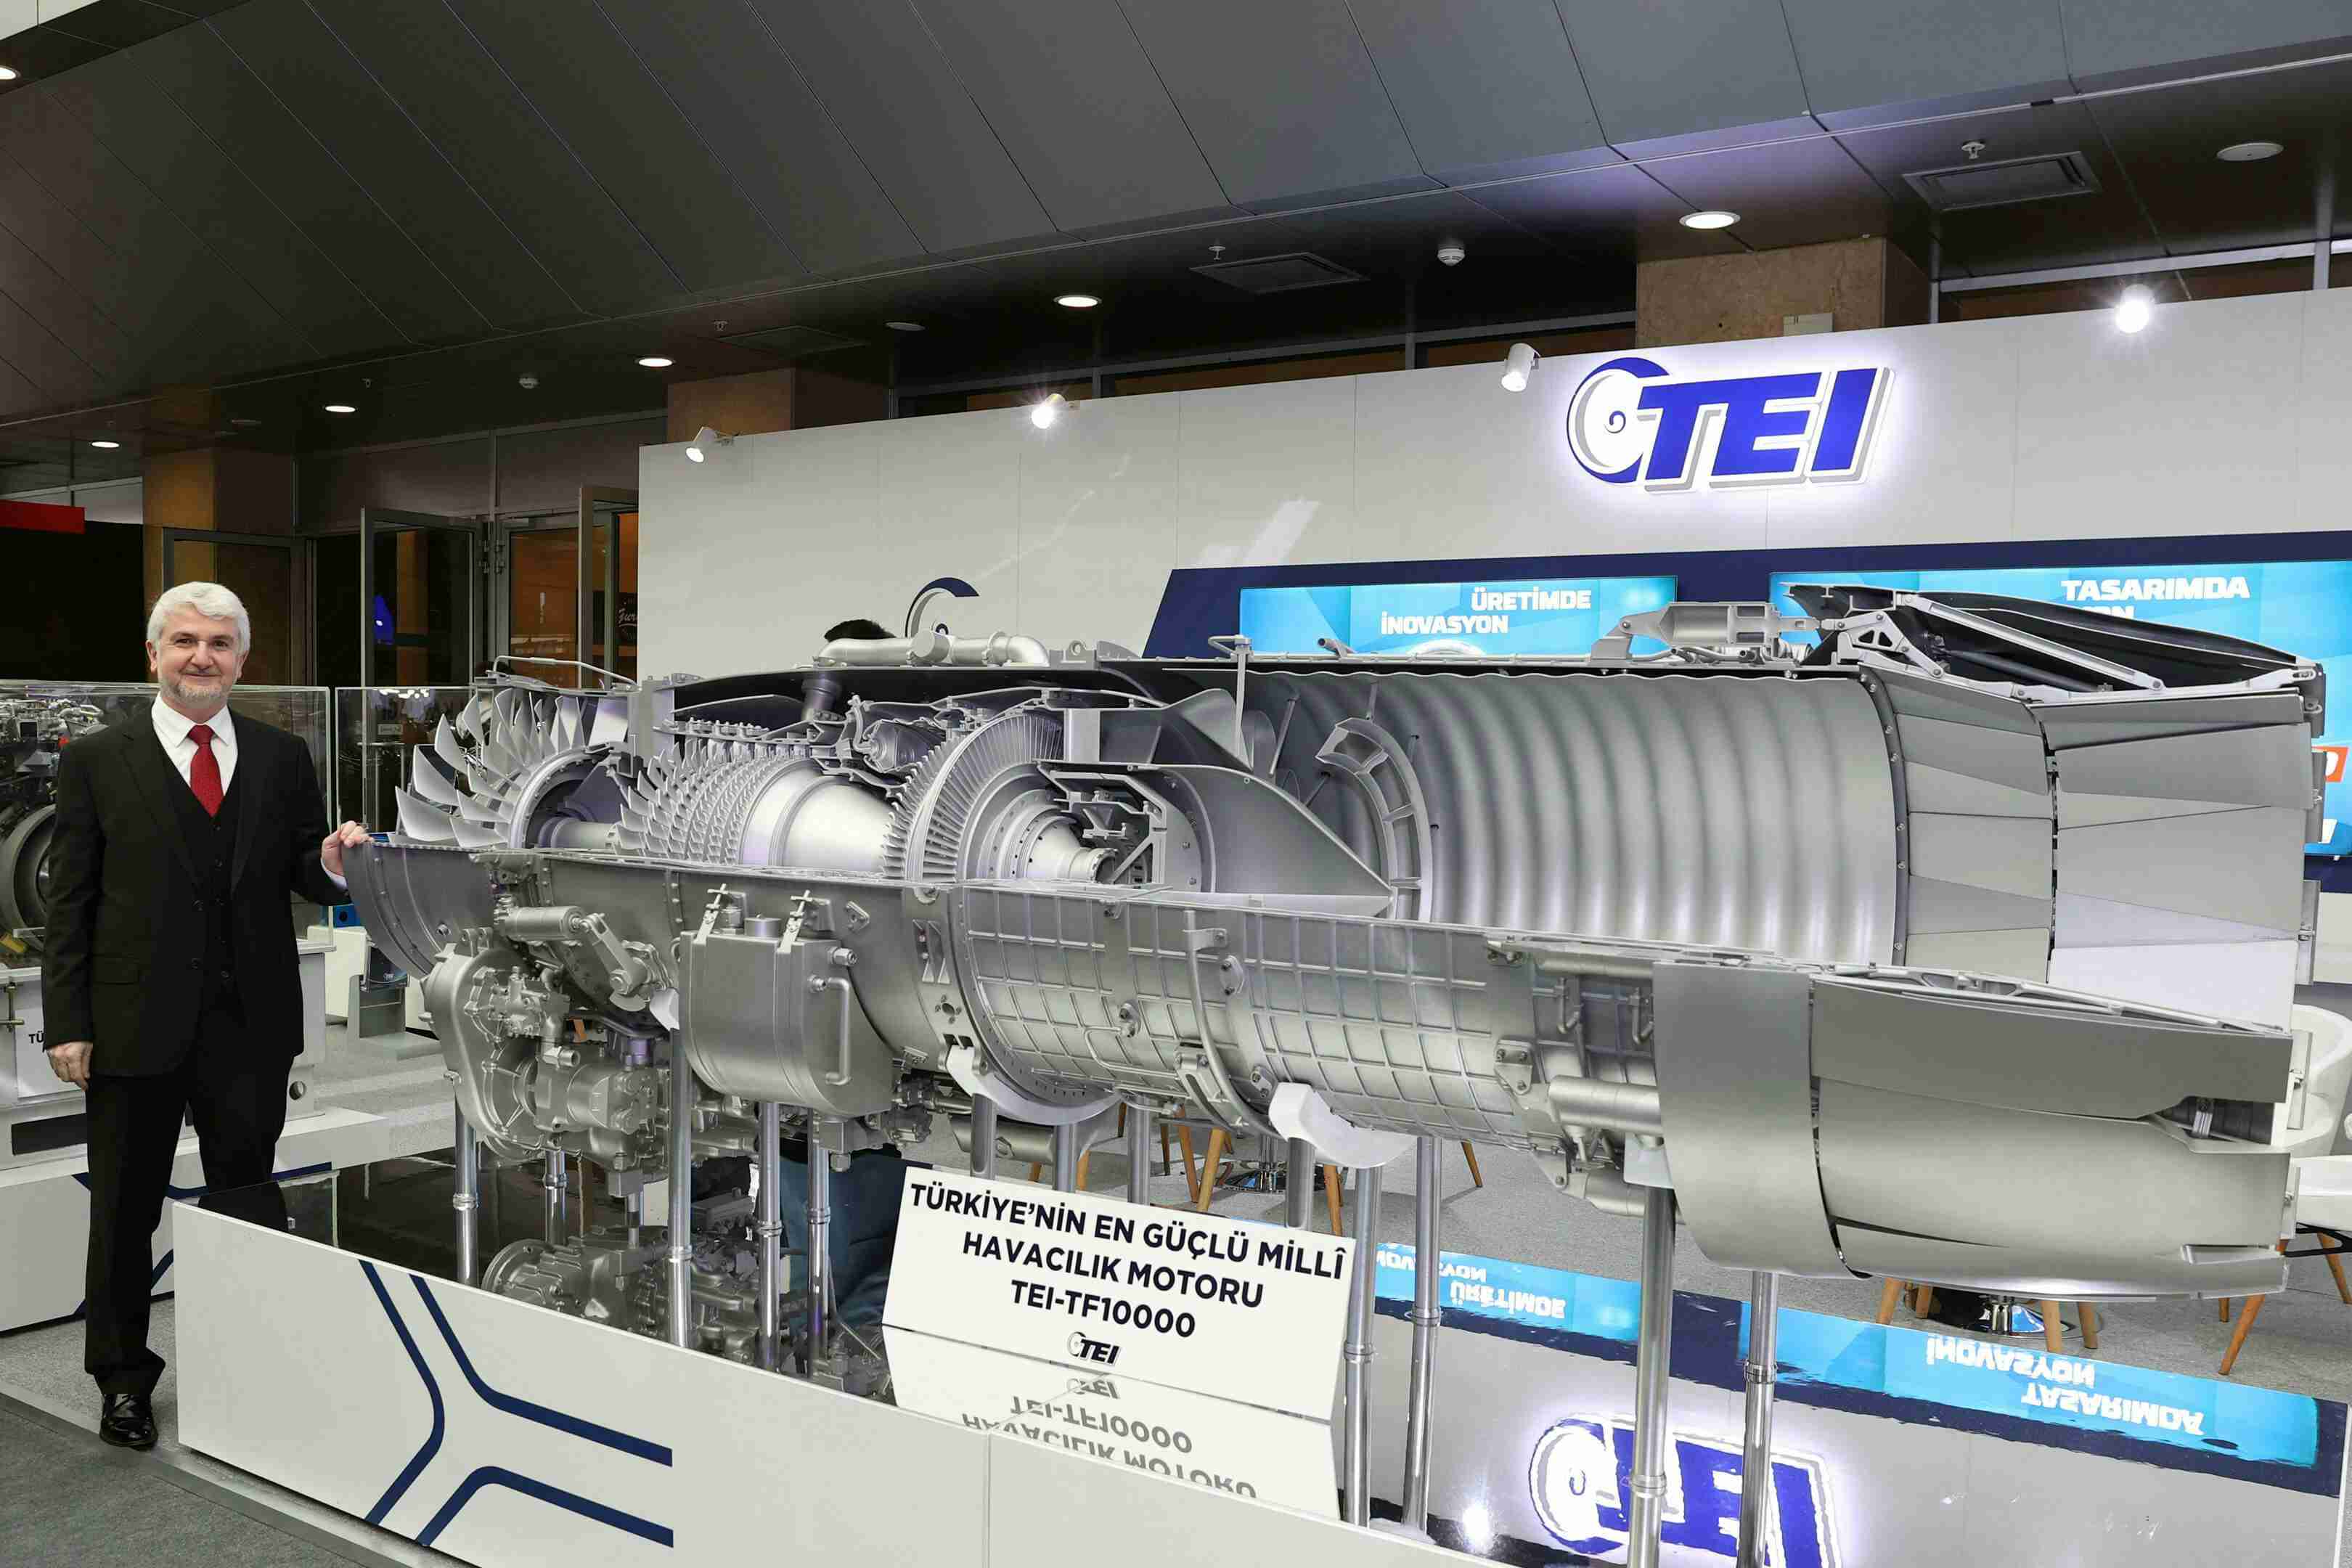 TEI-TF10000 motorunun lansmanı yapıldı